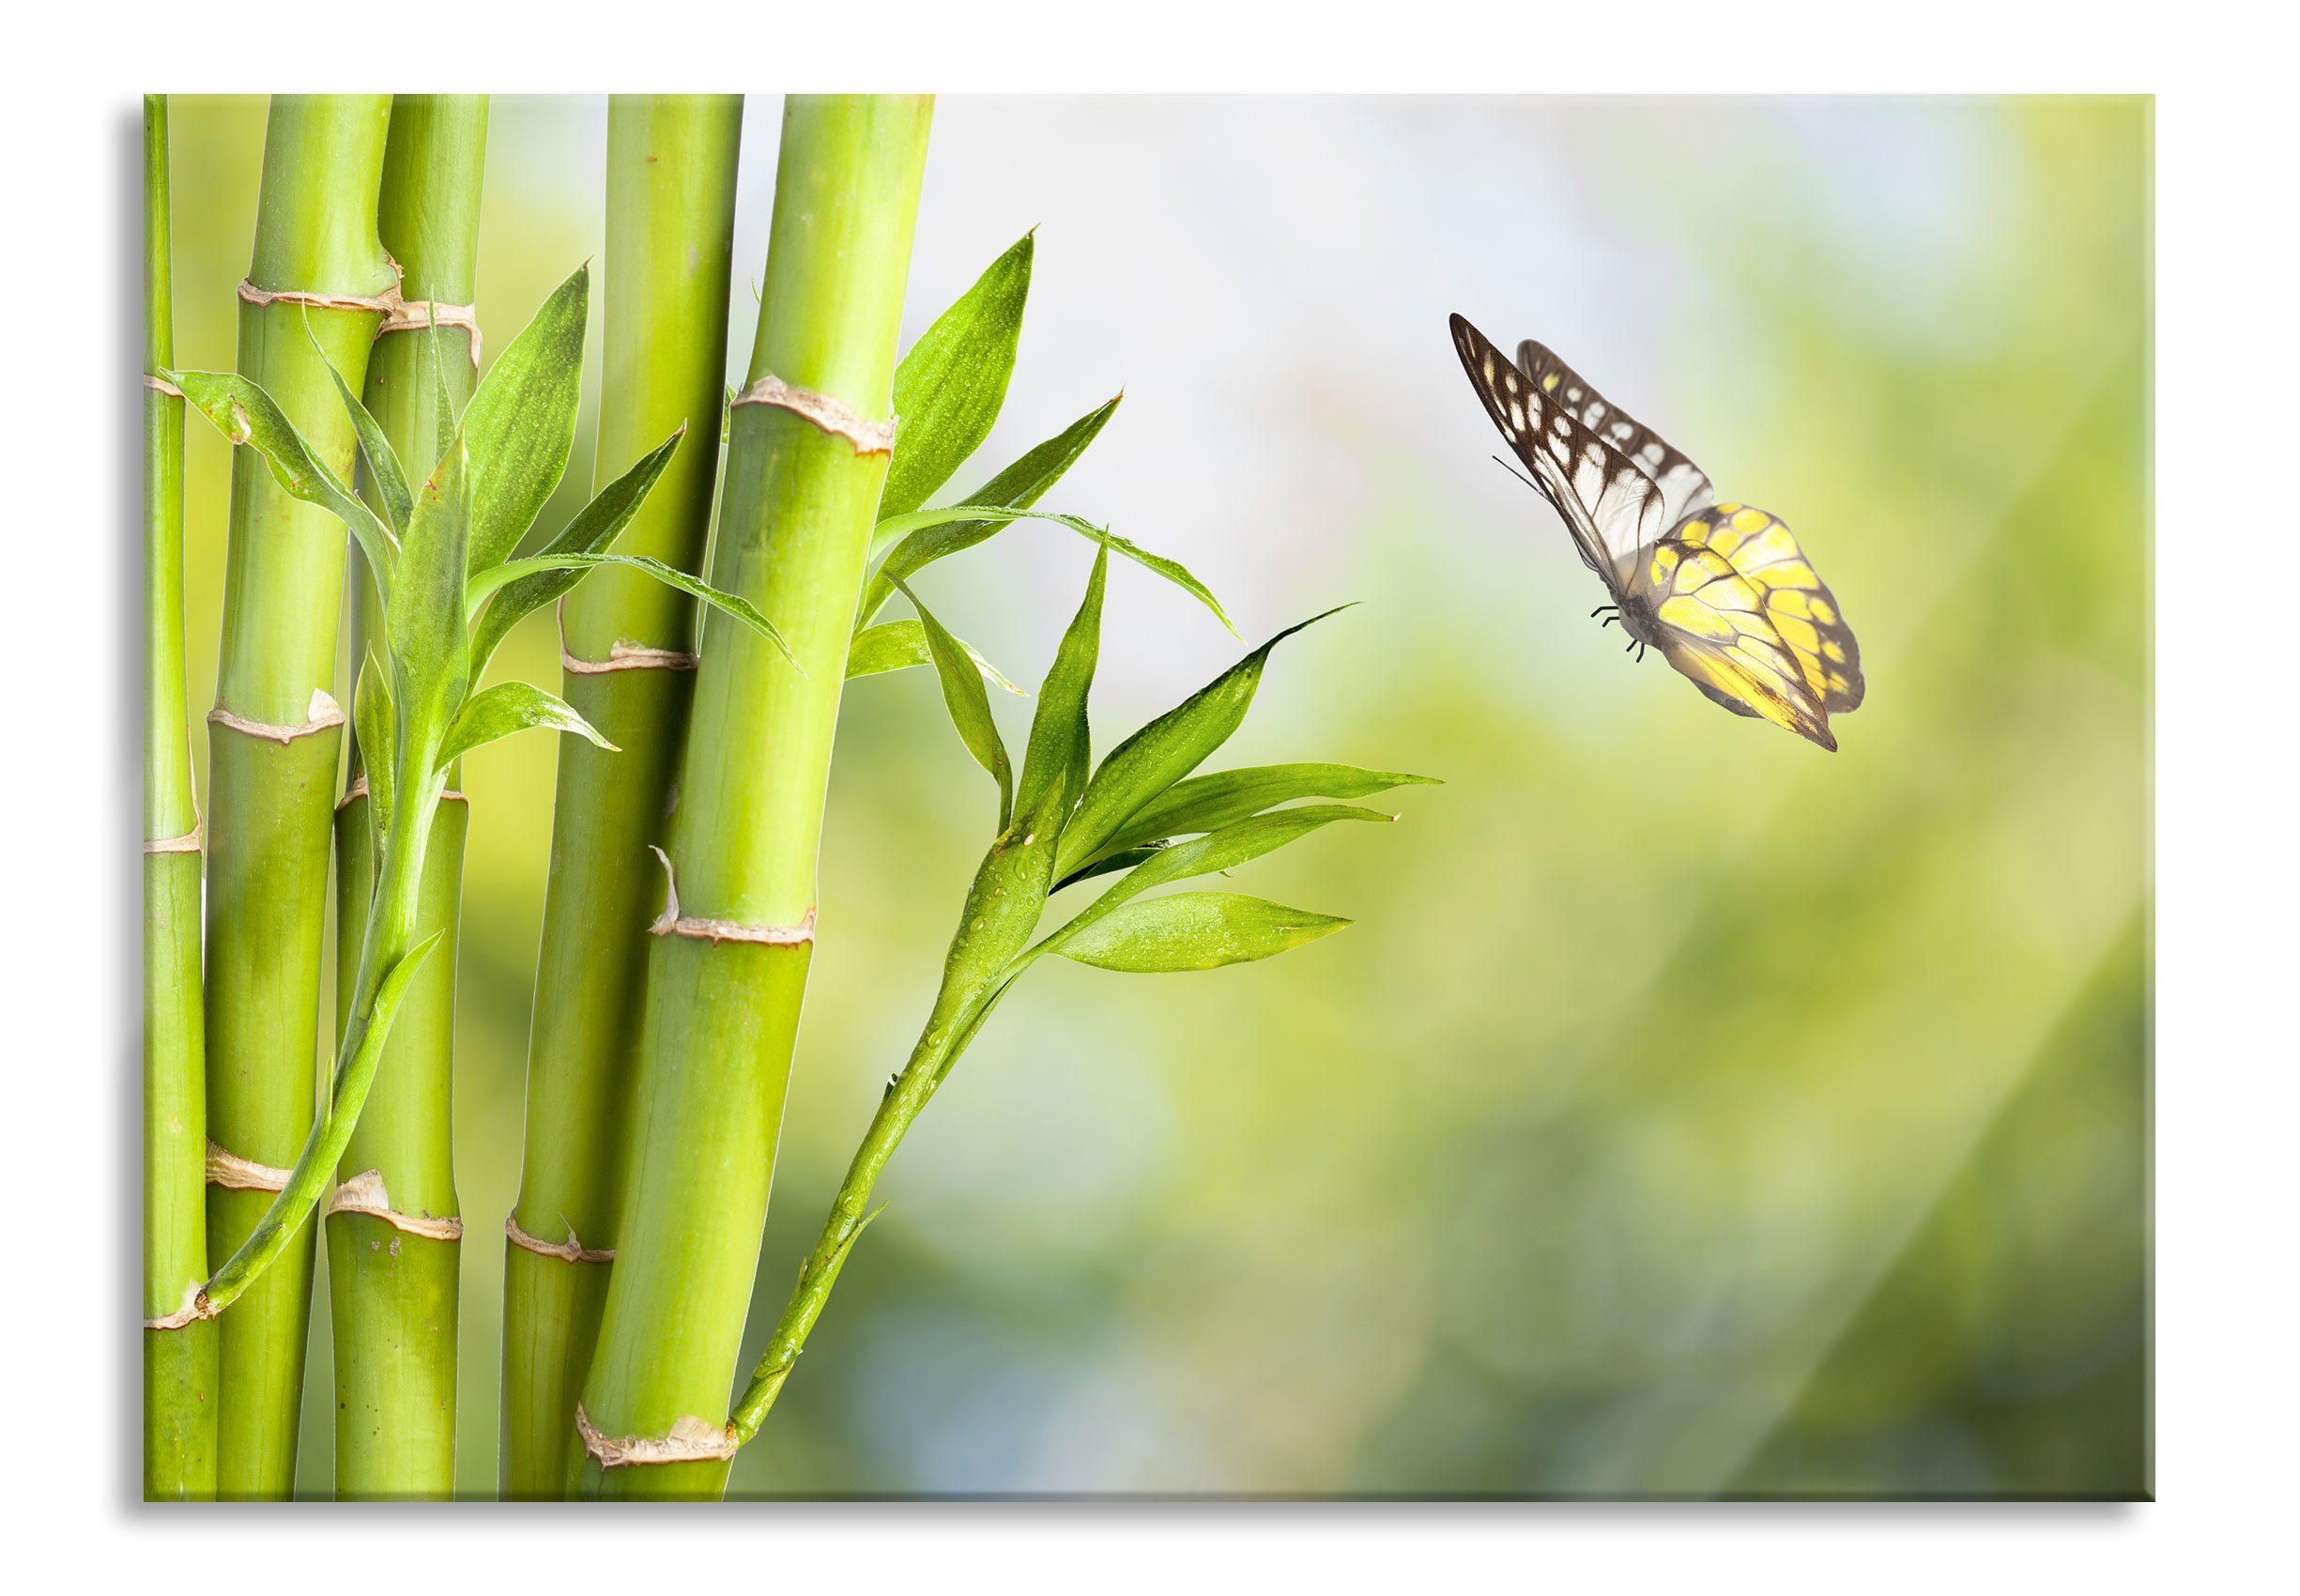 Pixxprint Glasbild Bambus mit Schmetterling, Bambus mit Schmetterling (1 St), Glasbild aus Echtglas, inkl. Aufhängungen und Abstandshalter